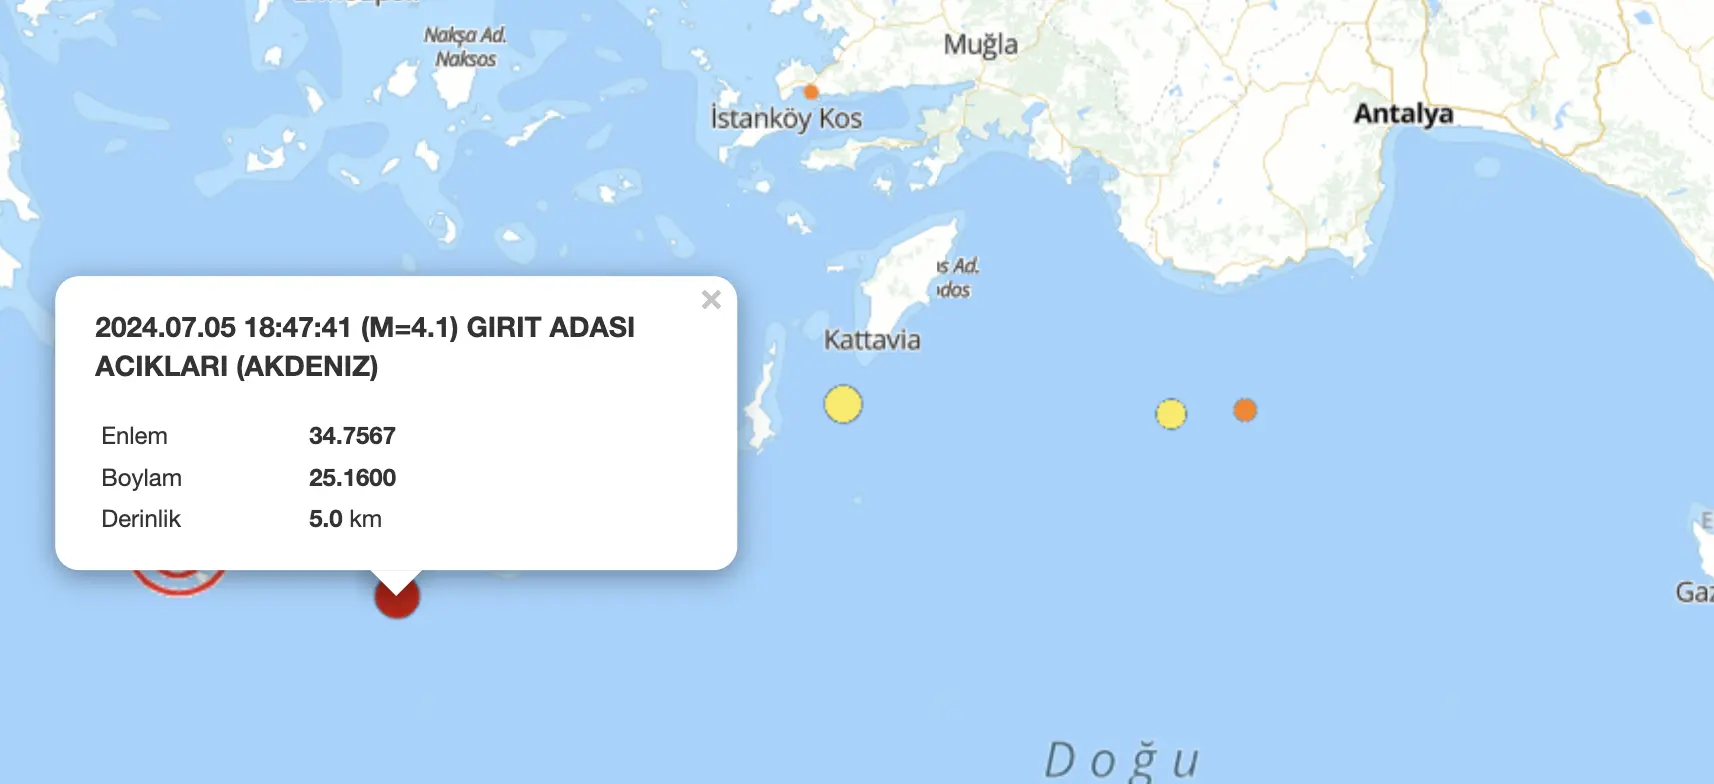 Akdeniz’de meydana gelen 4.1 büyüklüğündeki deprem Antalya, Muğla ve Aydın’da hissedildi